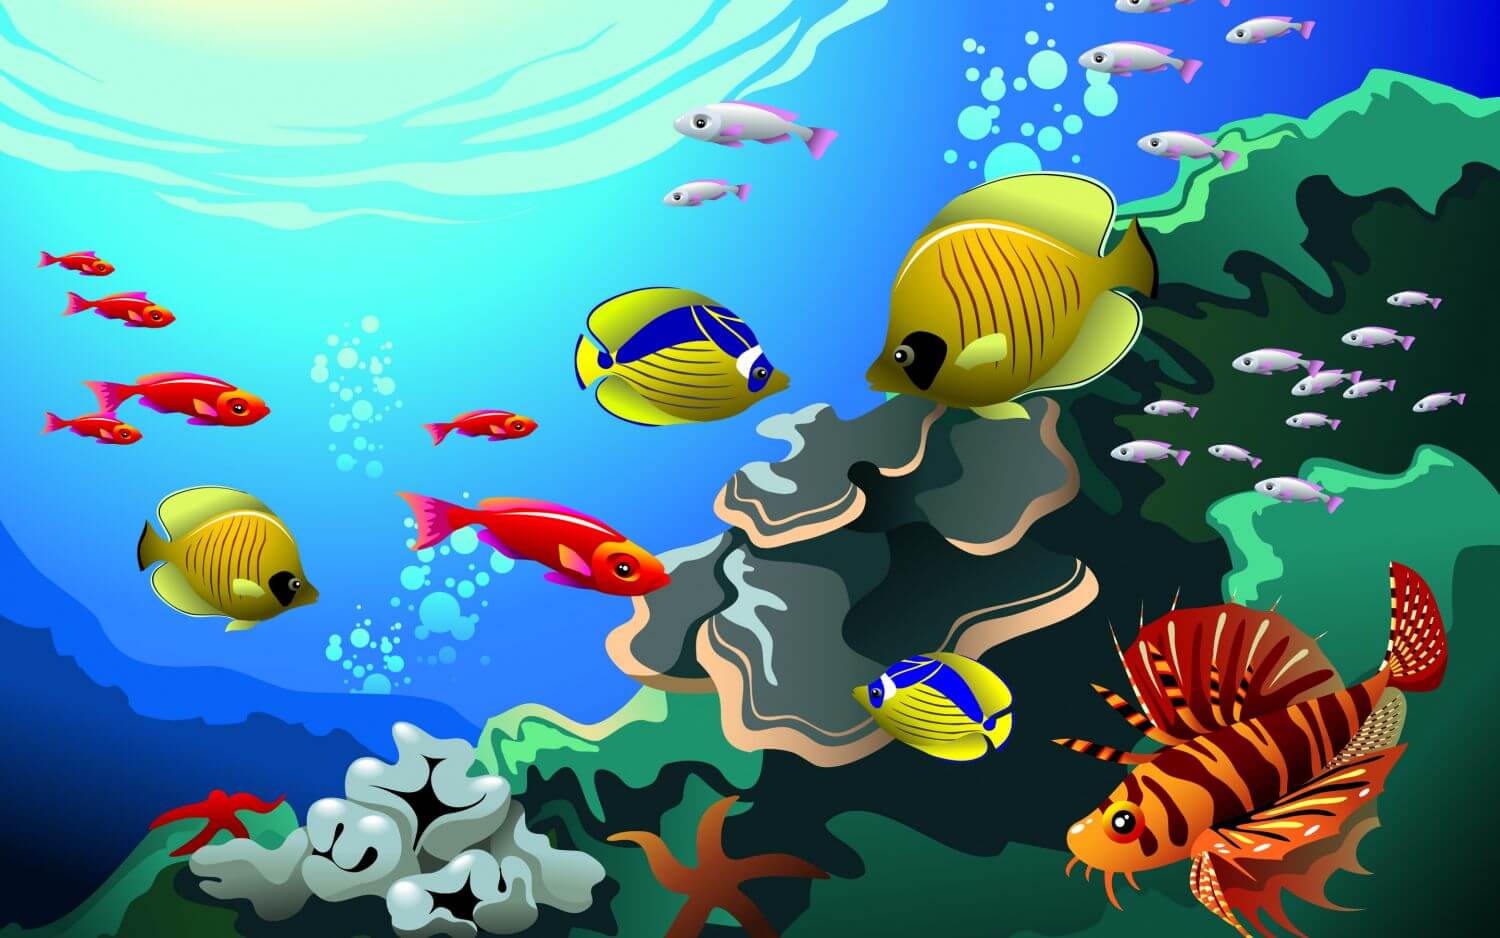 Картинки для детей подводный мир с названиями